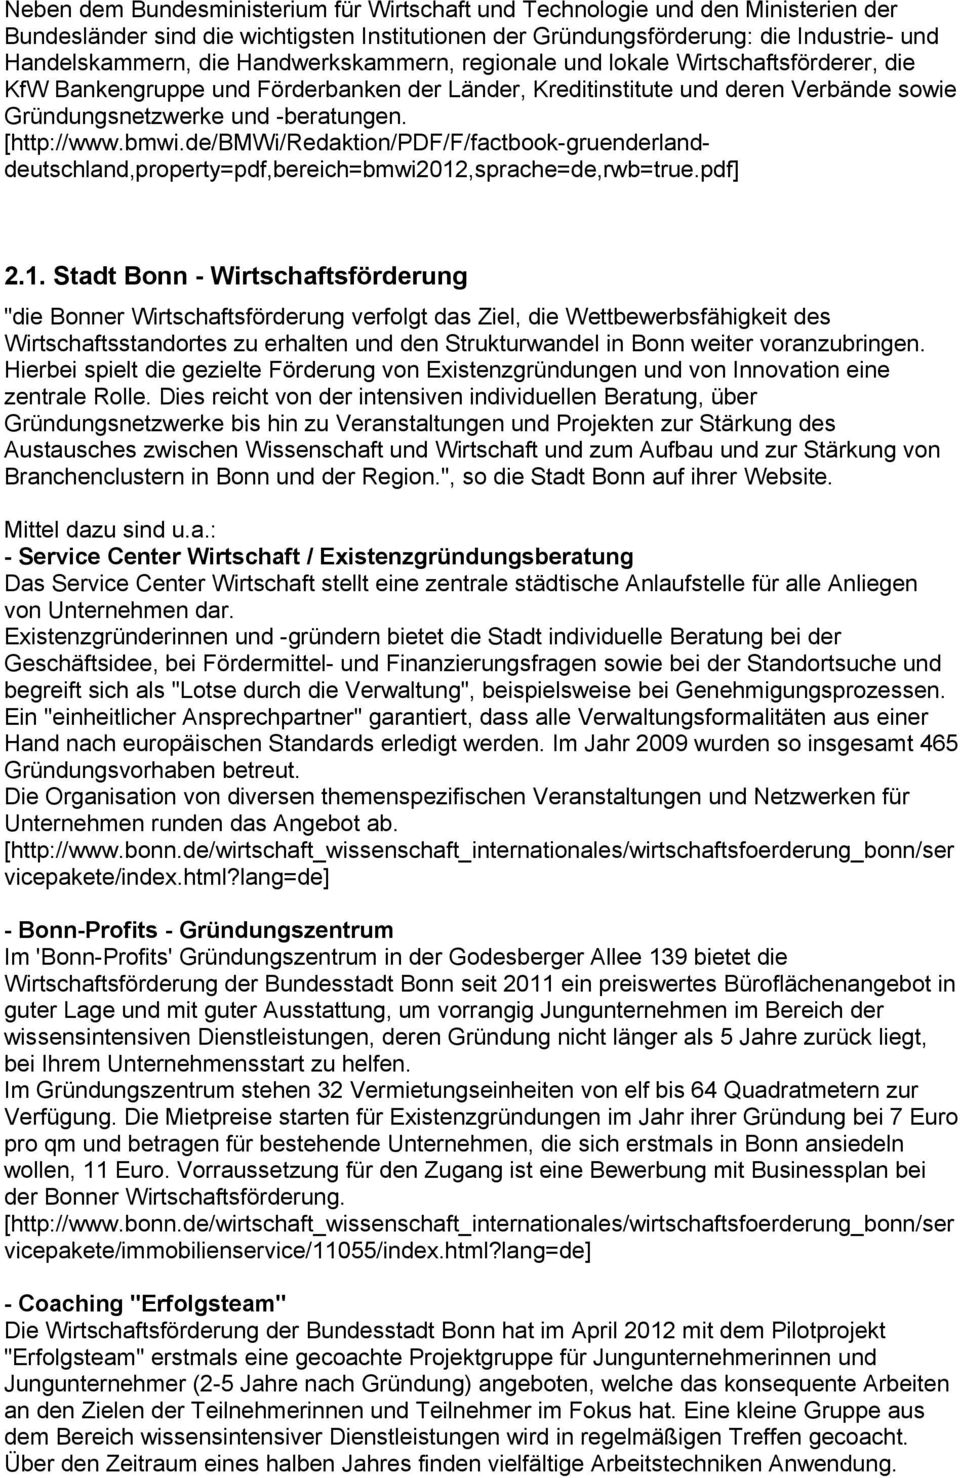 bmwi.de/bmwi/redaktion/pdf/f/factbook-gruenderlanddeutschland,property=pdf,bereich=bmwi2012